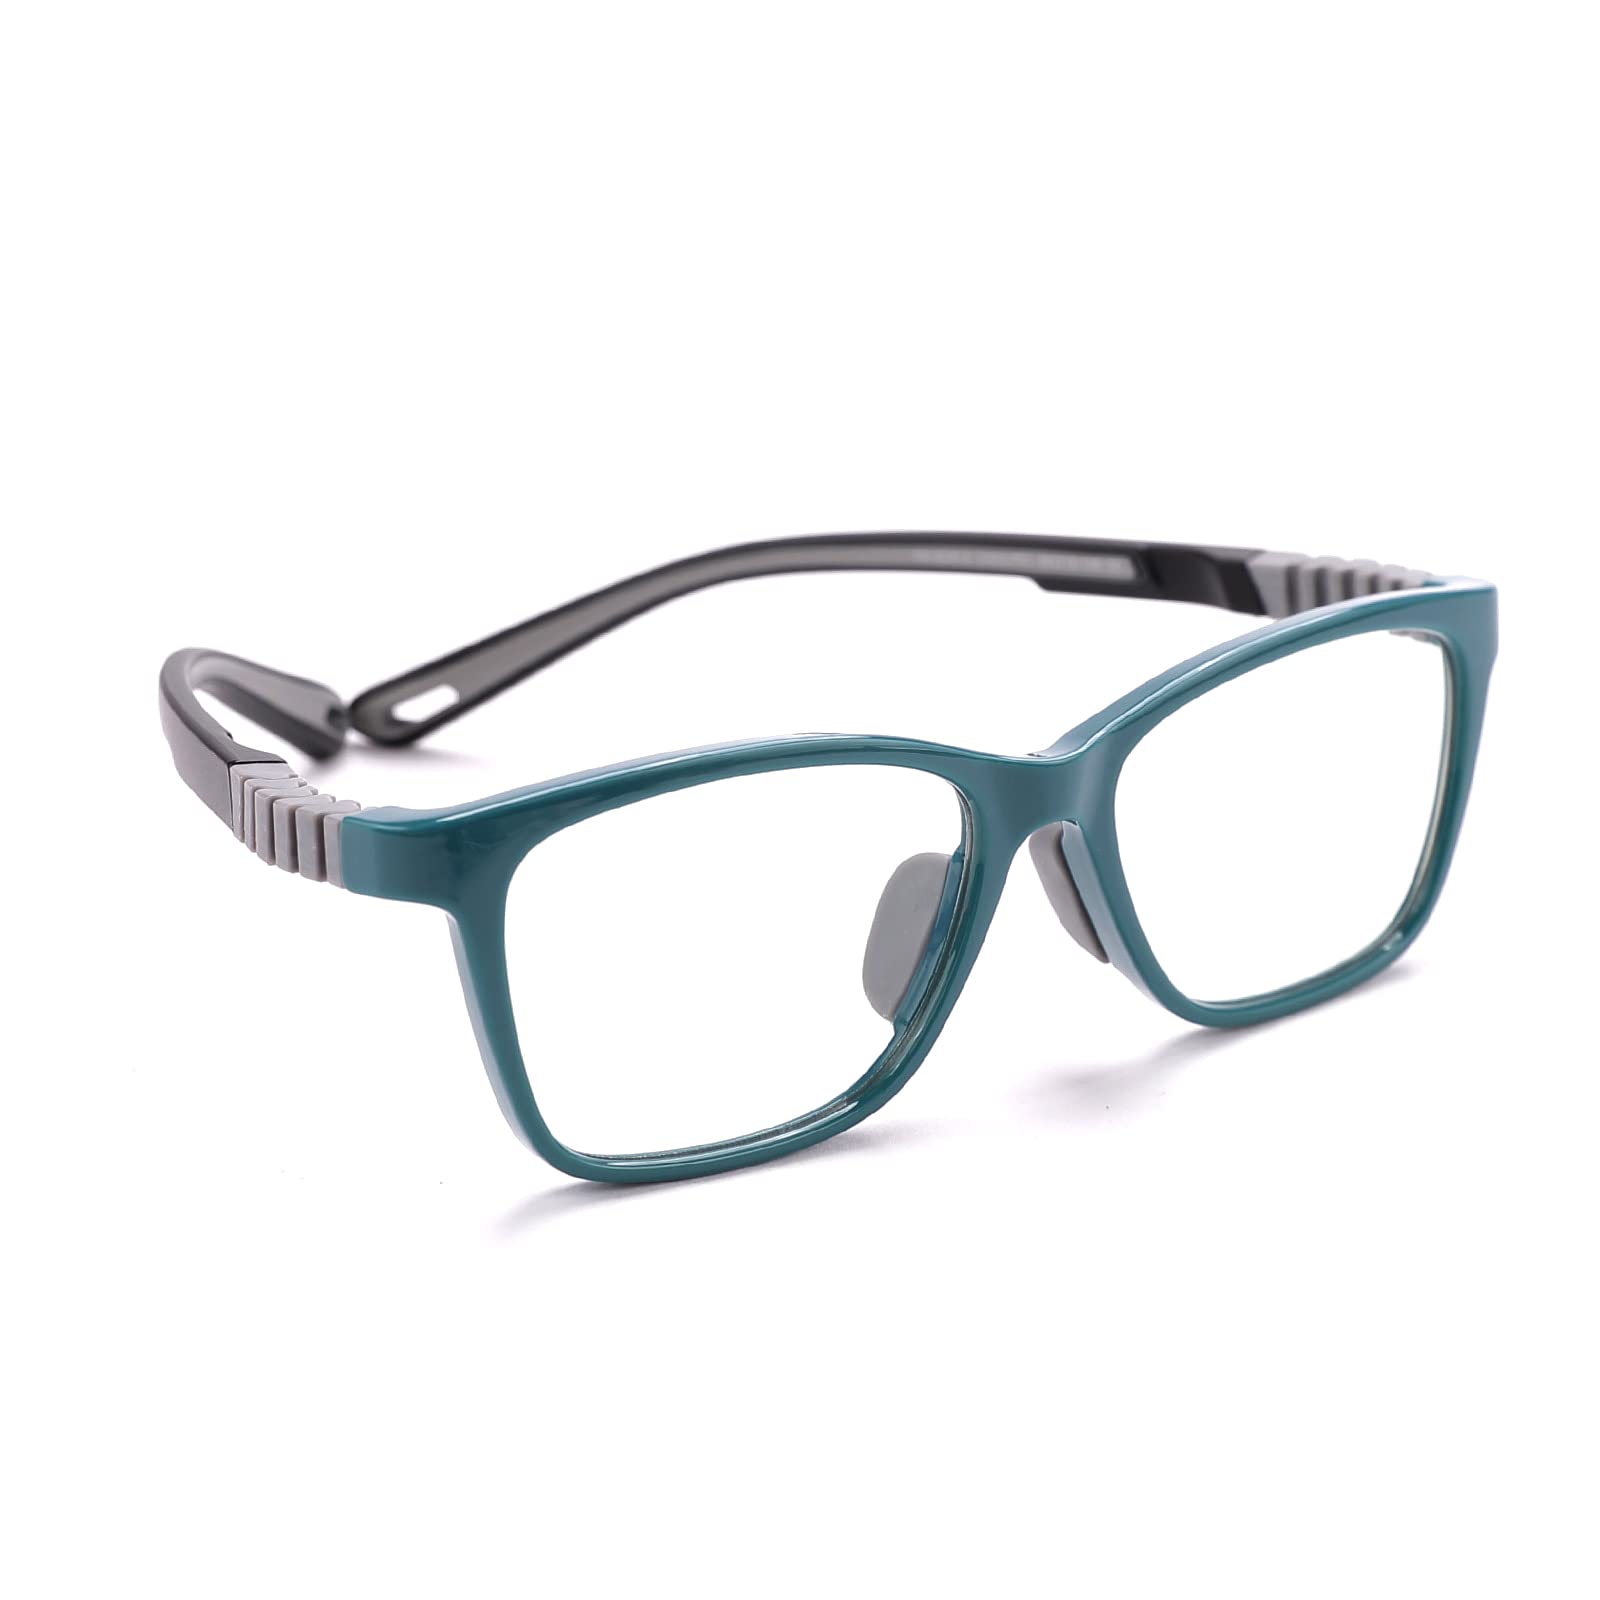 Intellilens Wayfarer Kids Computer Glasses for Eye Protection | Zero Power, Anti Glare & Blue Light Filter Glasses | Blue Cut Lenses for Boys and Girls (Green) (49-15-130)